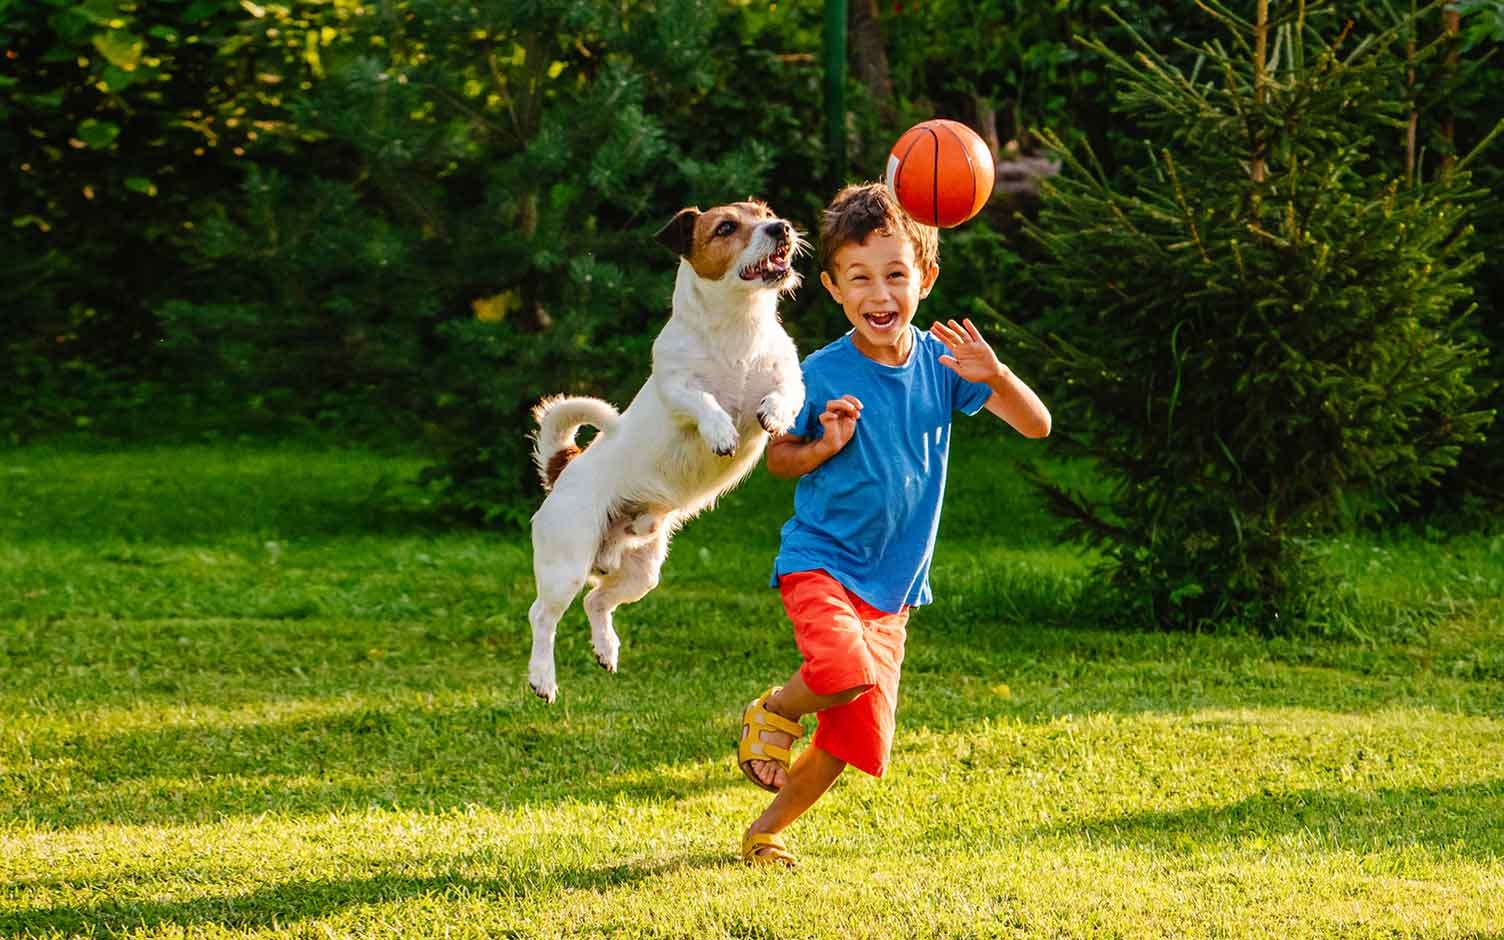 Jugar al aire libre es clave para tener niños saludables